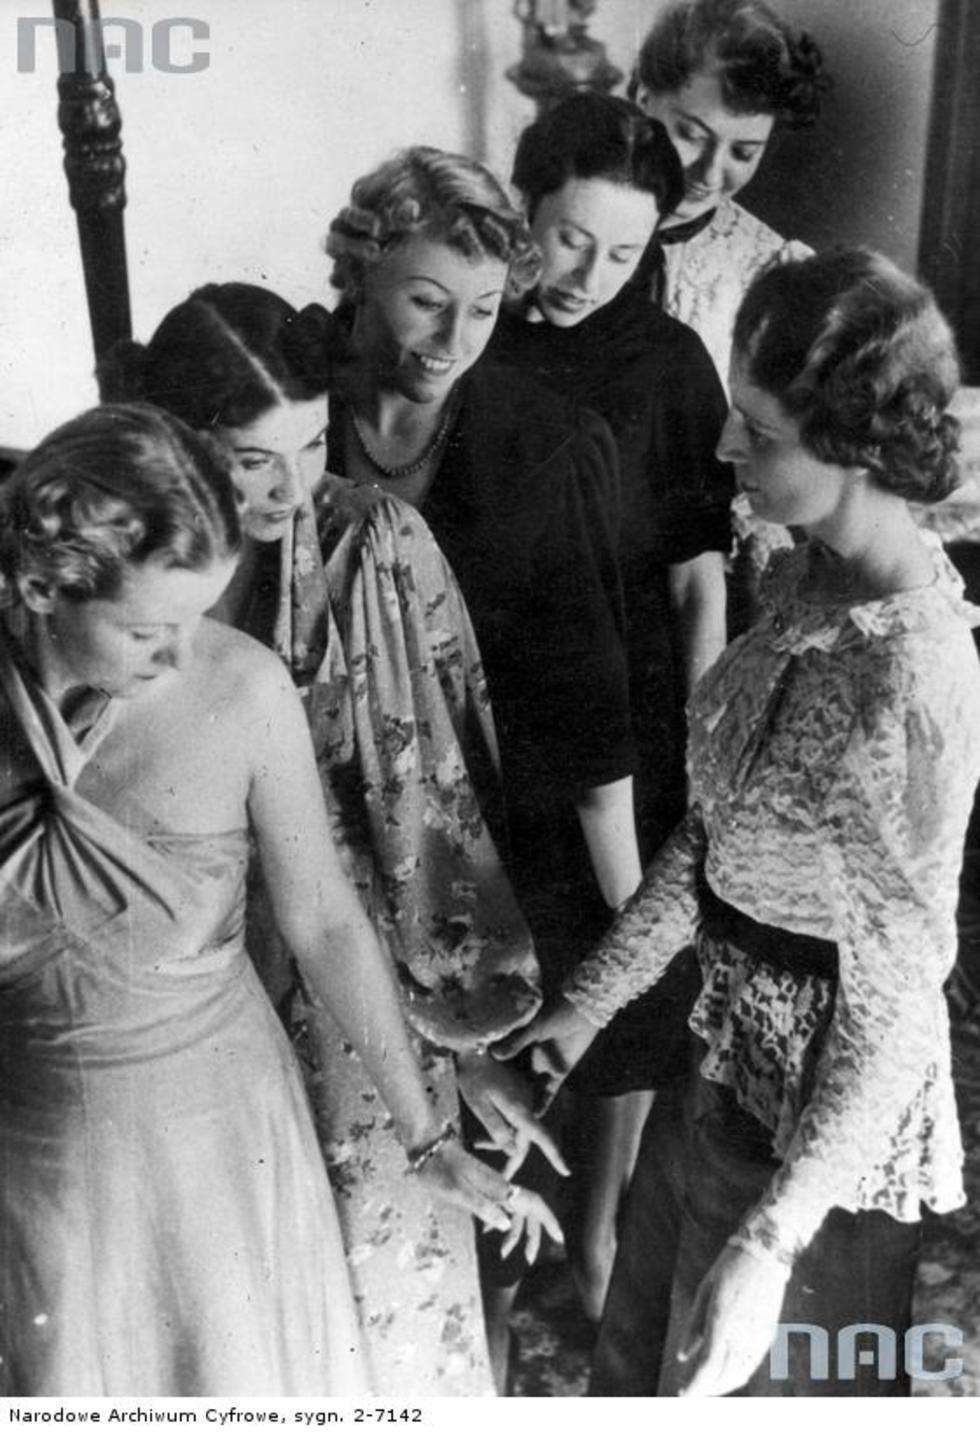  Salon mody w Warszawie. Kobiety w rozmowie z kierowniczką salonu mody. Marzec 1941 r.

